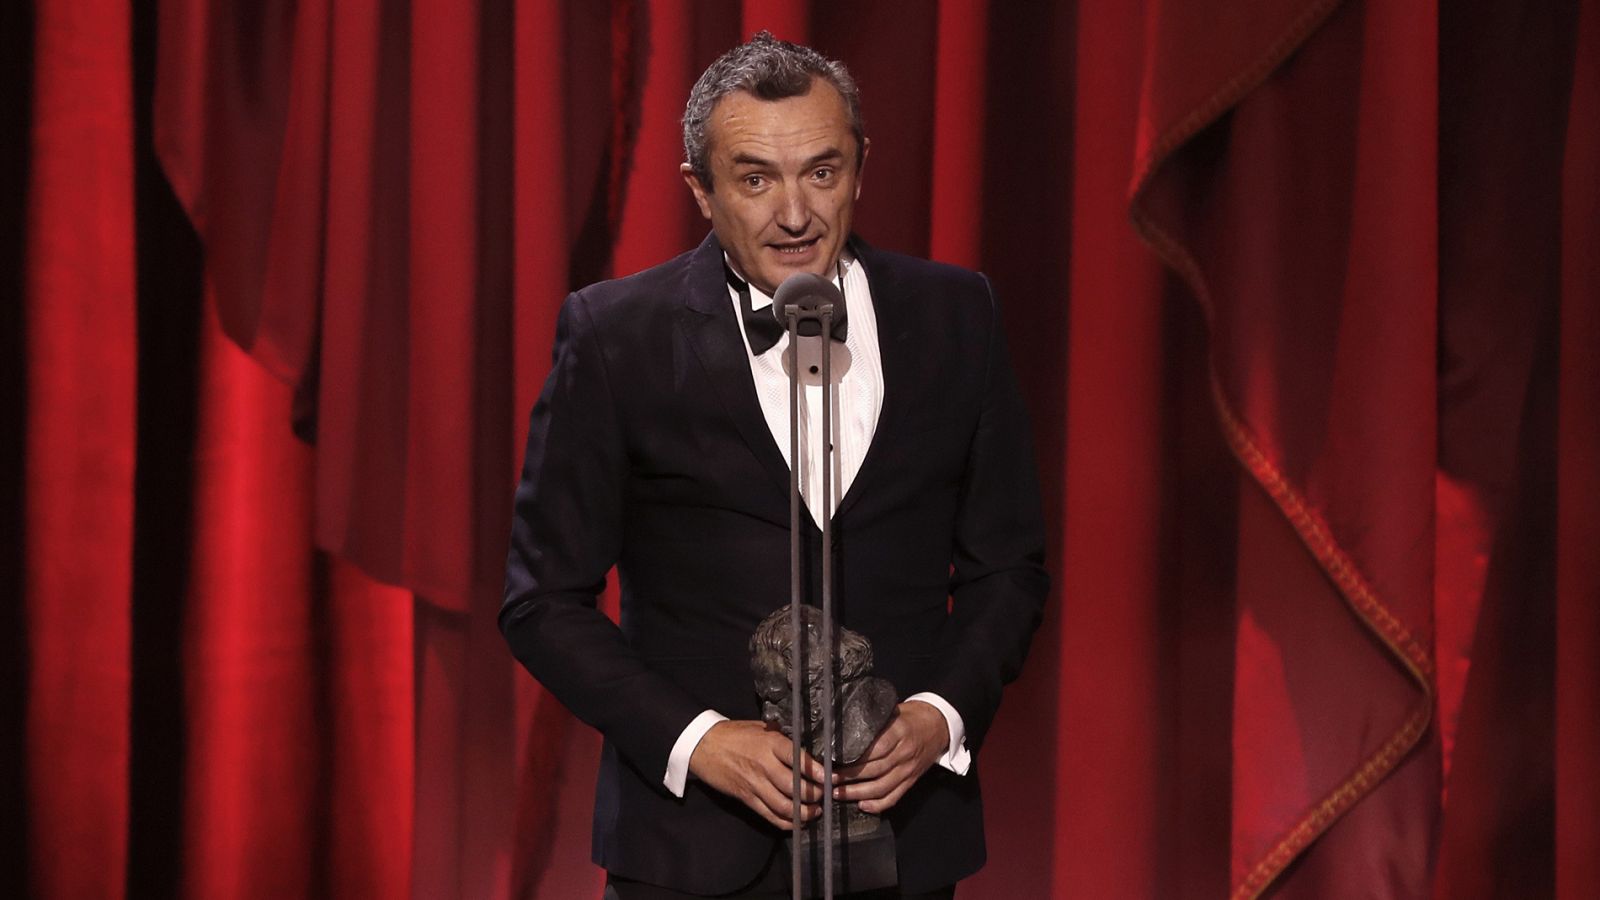 Premios Goya: Juan Pedro de Gaspar gana el Goya a la mejor dirección artística por 'La sombra de la ley' - RTVE.es